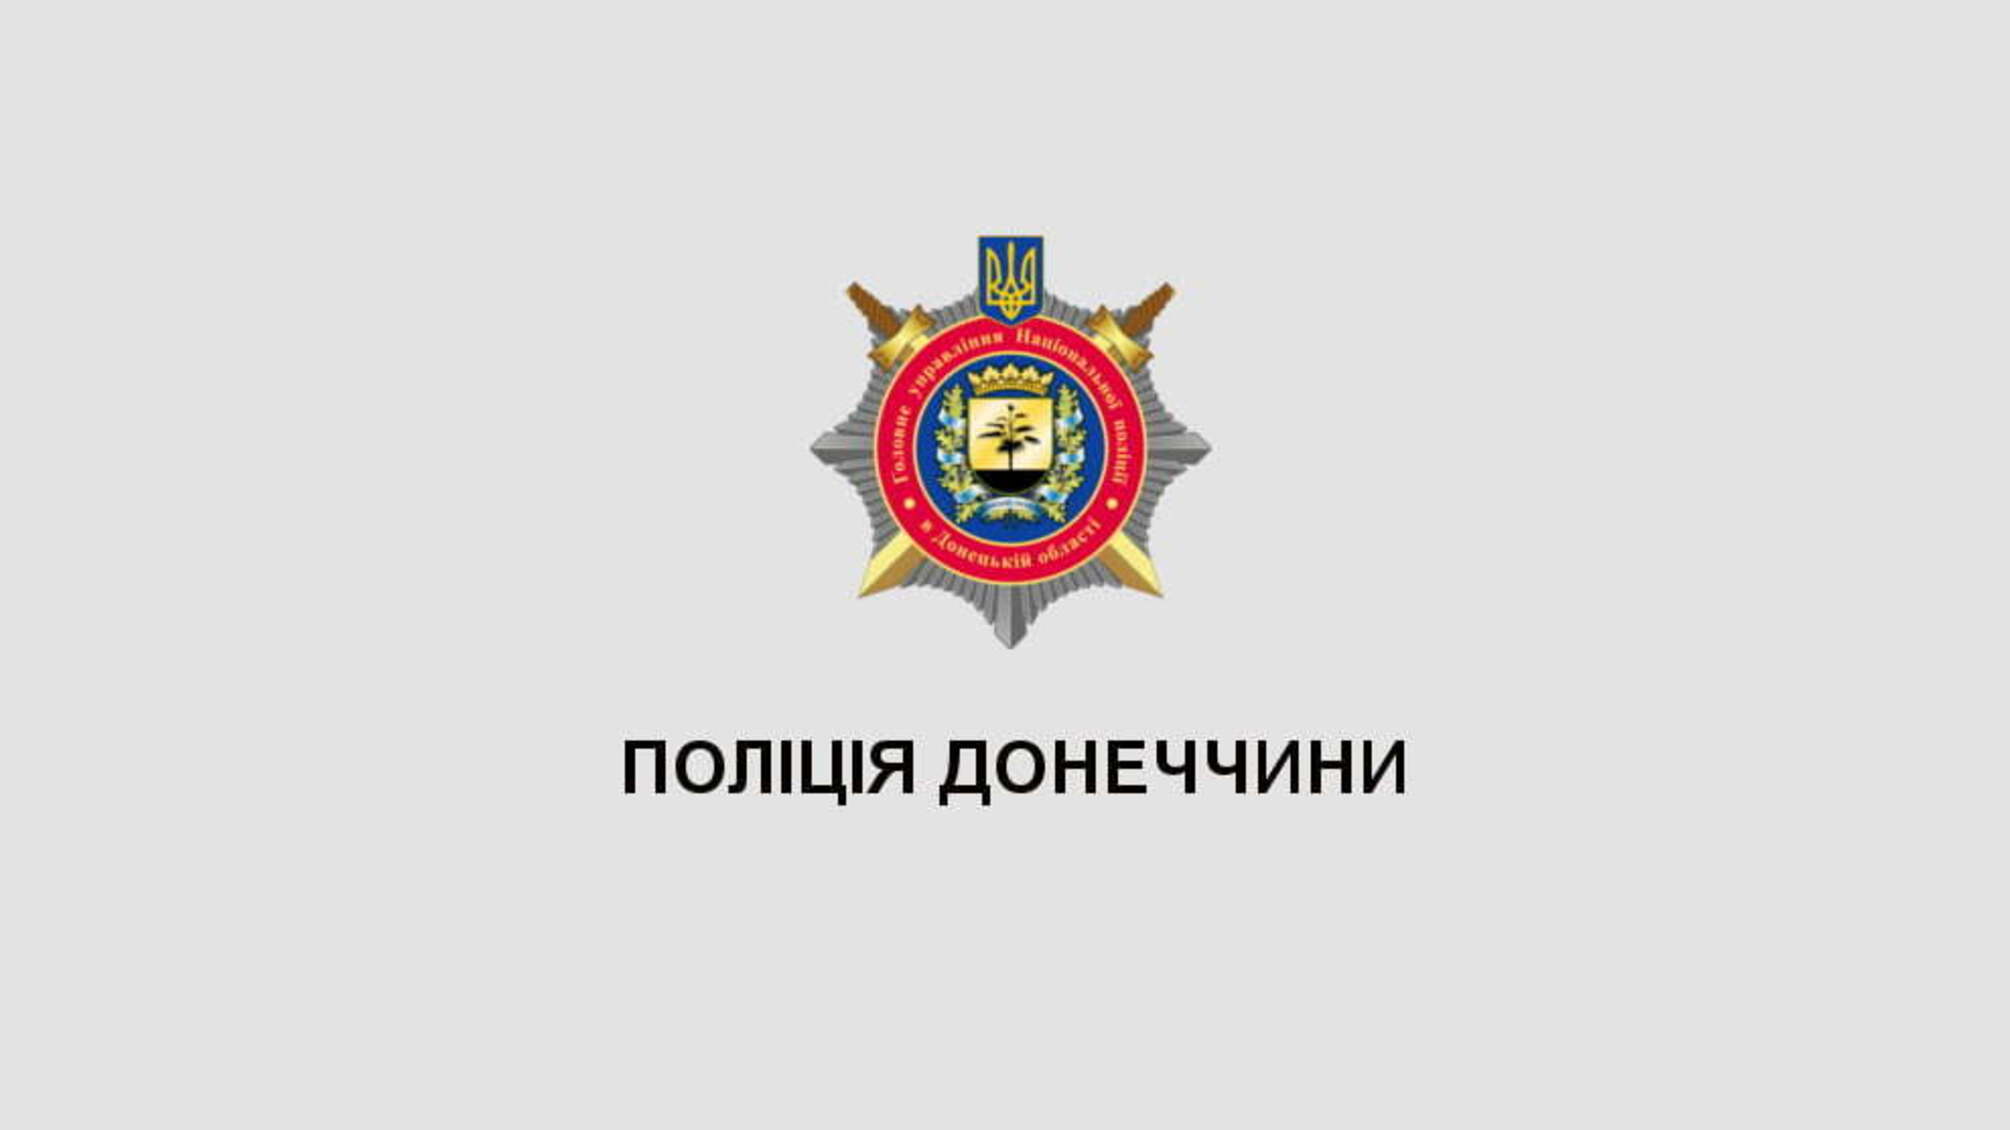 У прифронтовому Новотроїцькому до охорони порядку долучилися учасники громадського формування